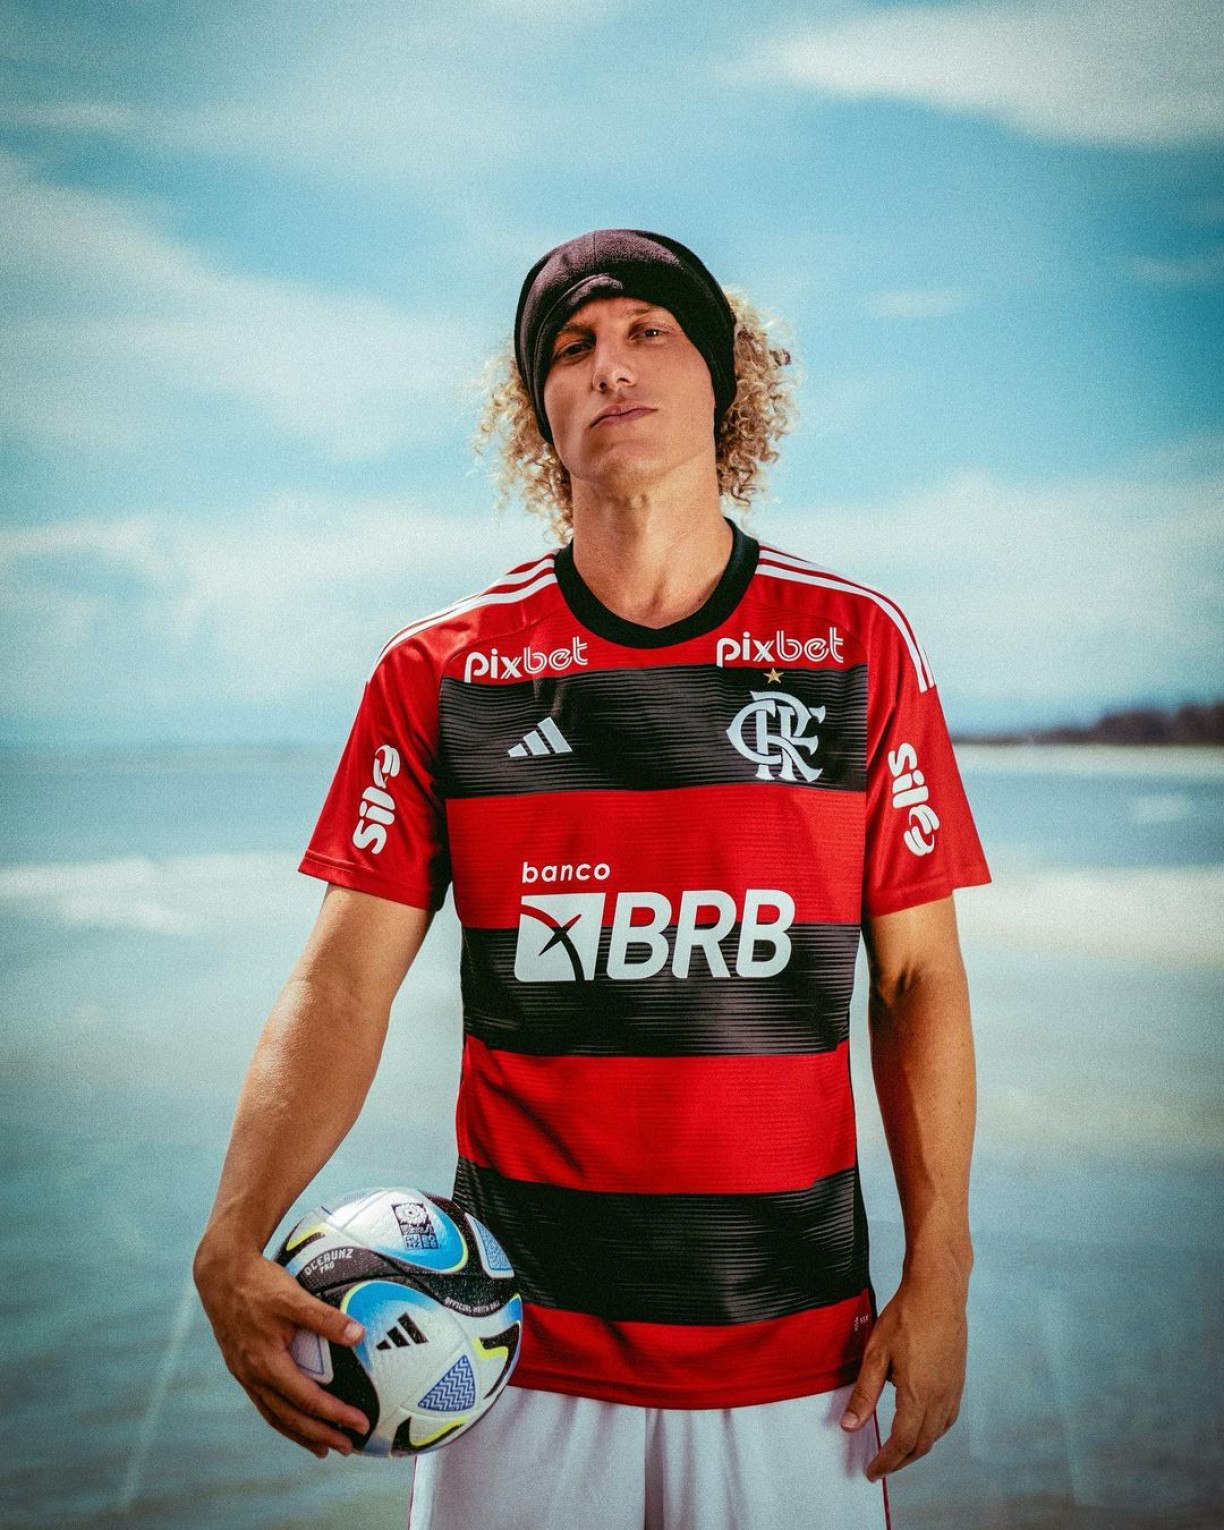 Zagueiro do Flamengo, David Luiz dá sugestão inusitada para